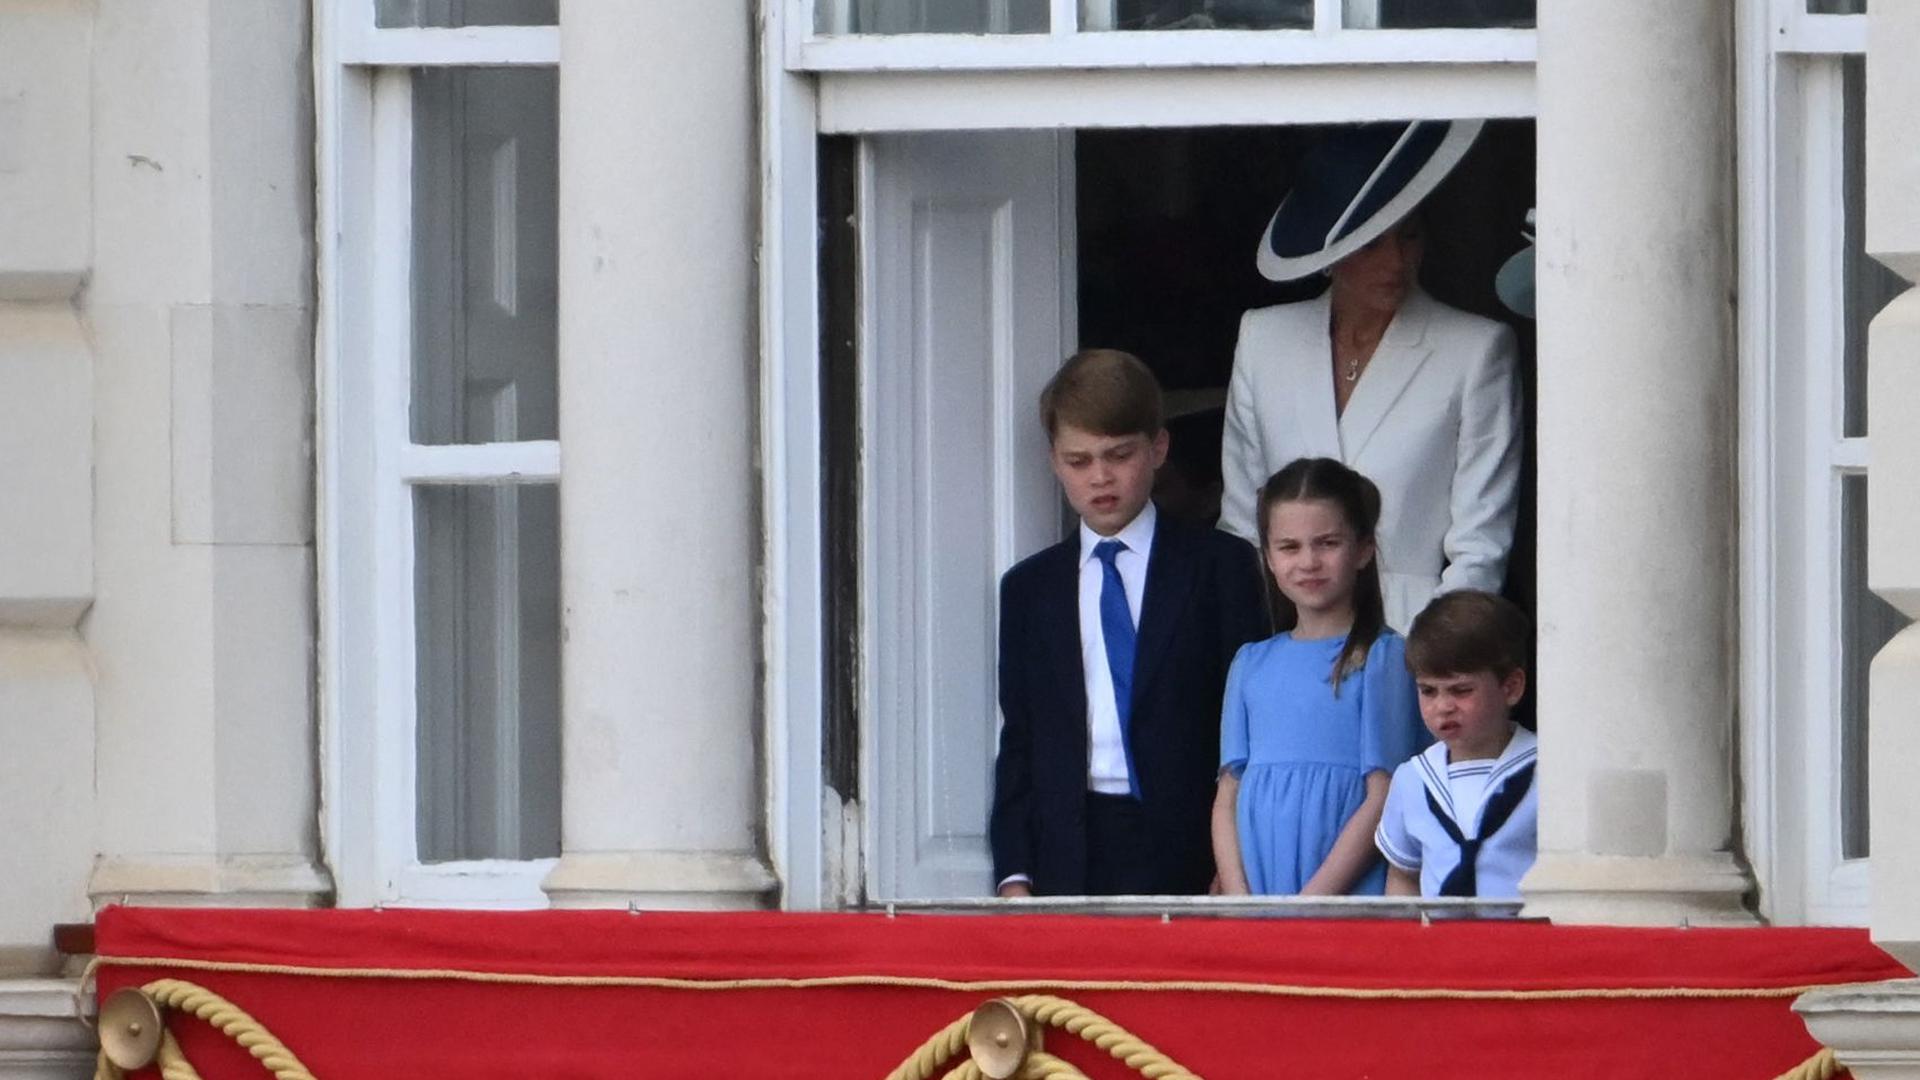 Princesa Charlotte, usou um vestido de marca portuguesa no Jubileu que esgotou em poucas horas.